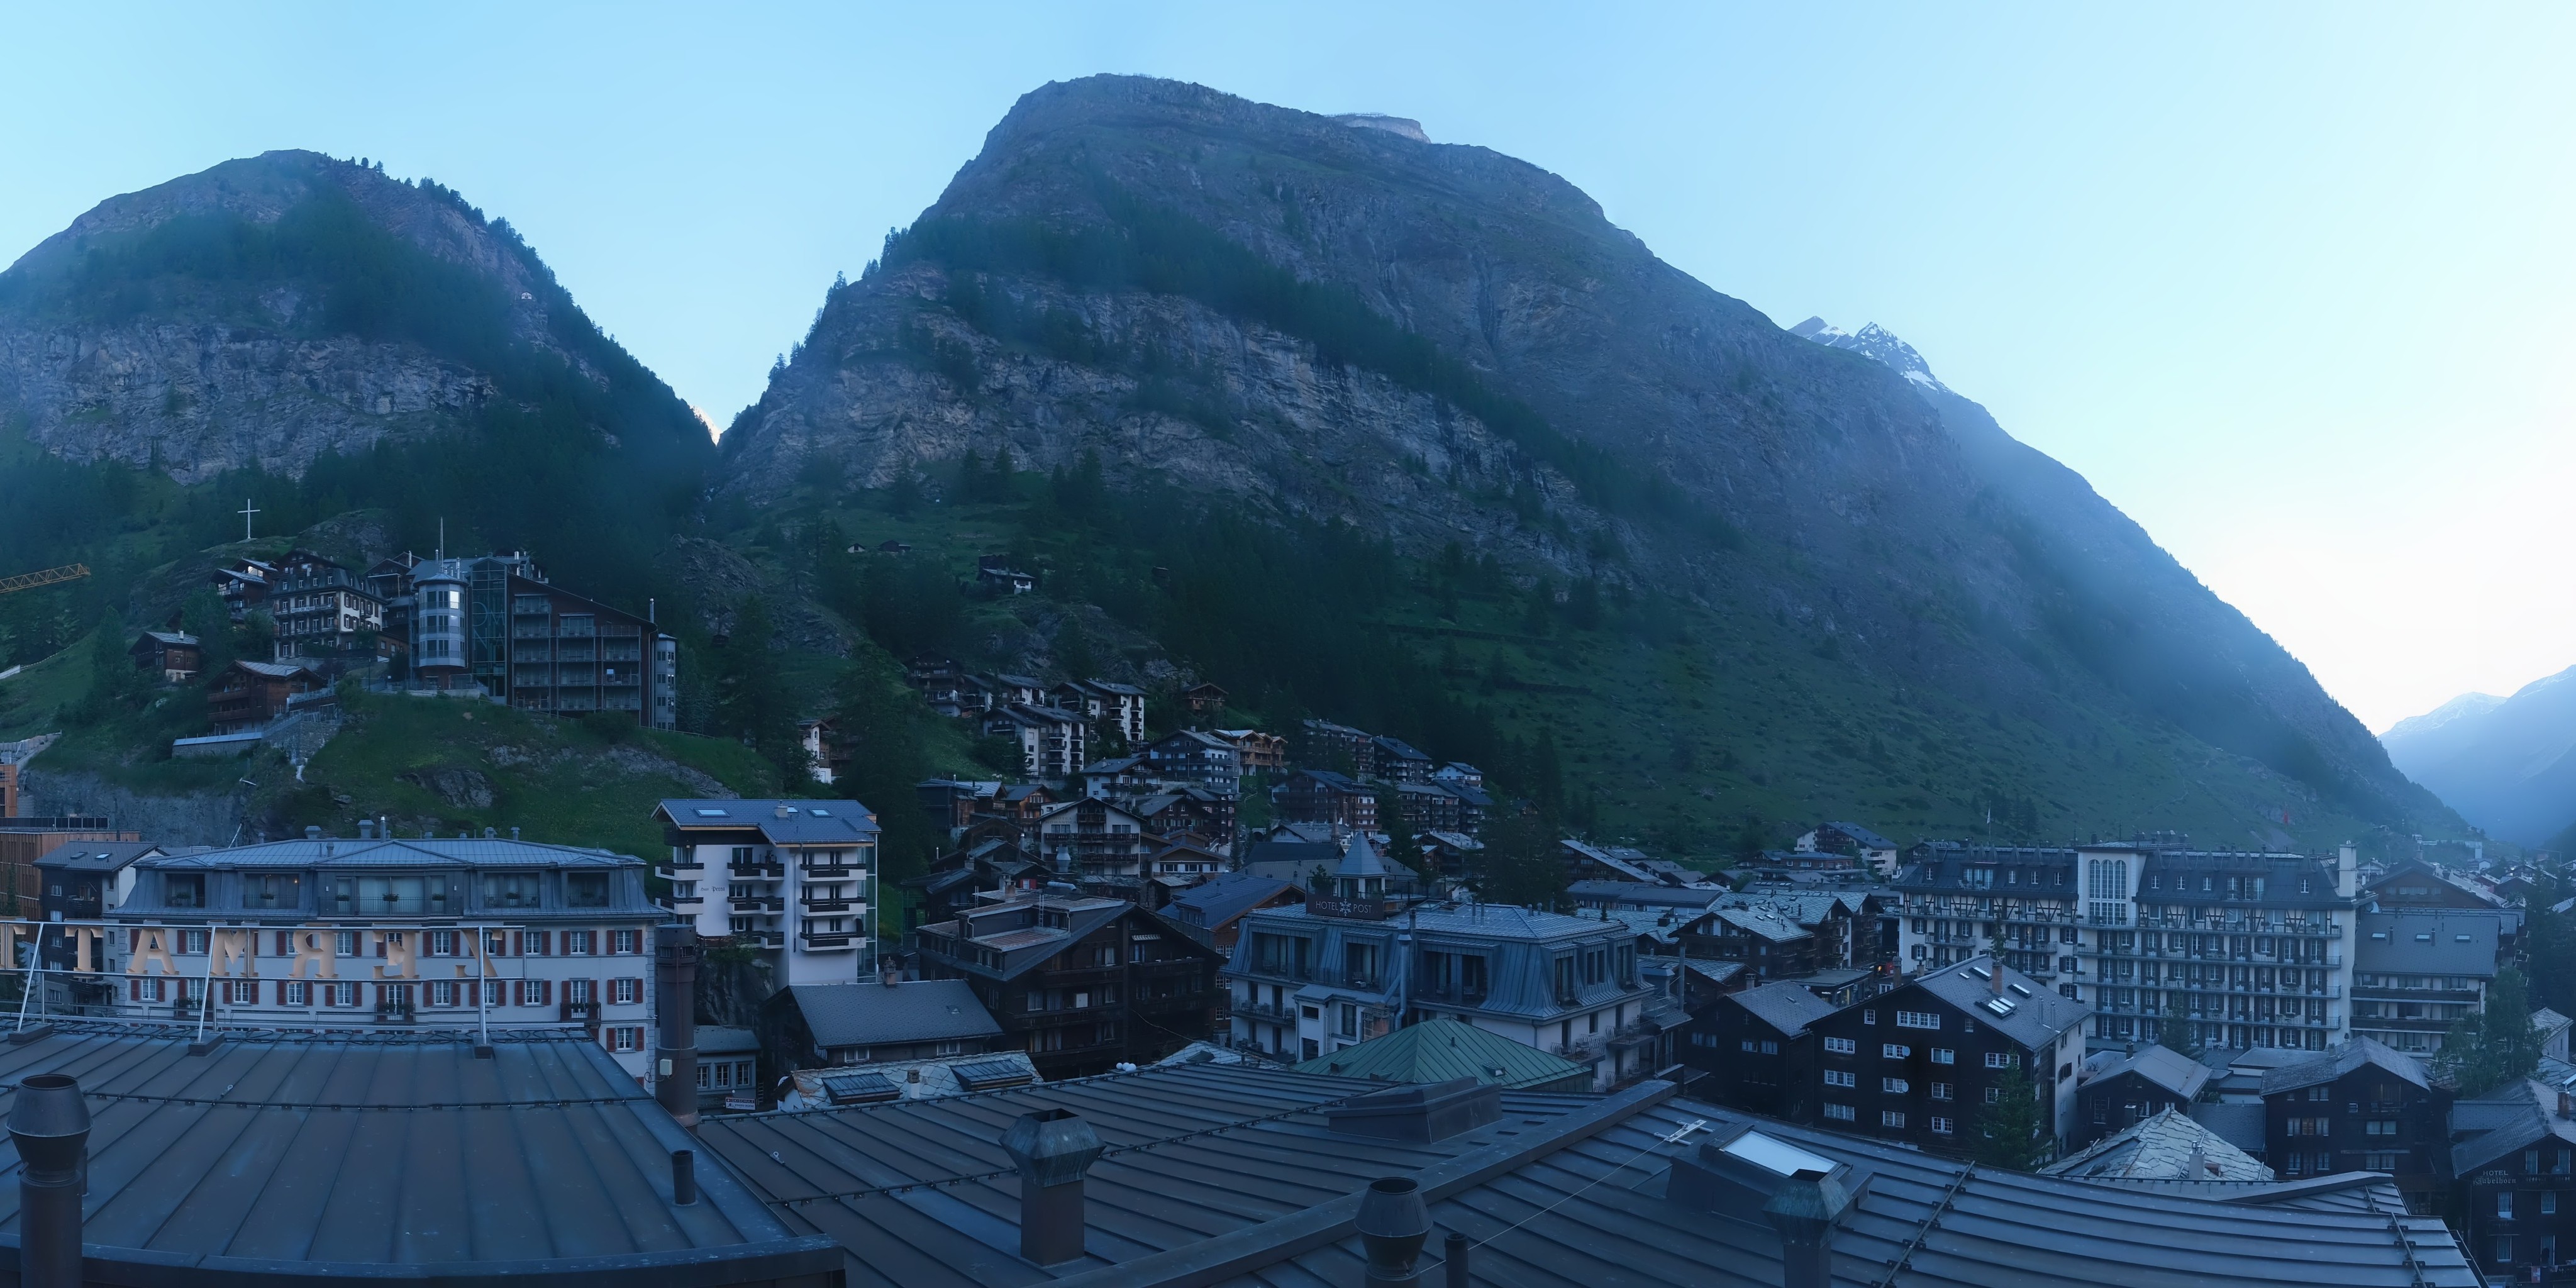 Zermatt Sat. 06:24